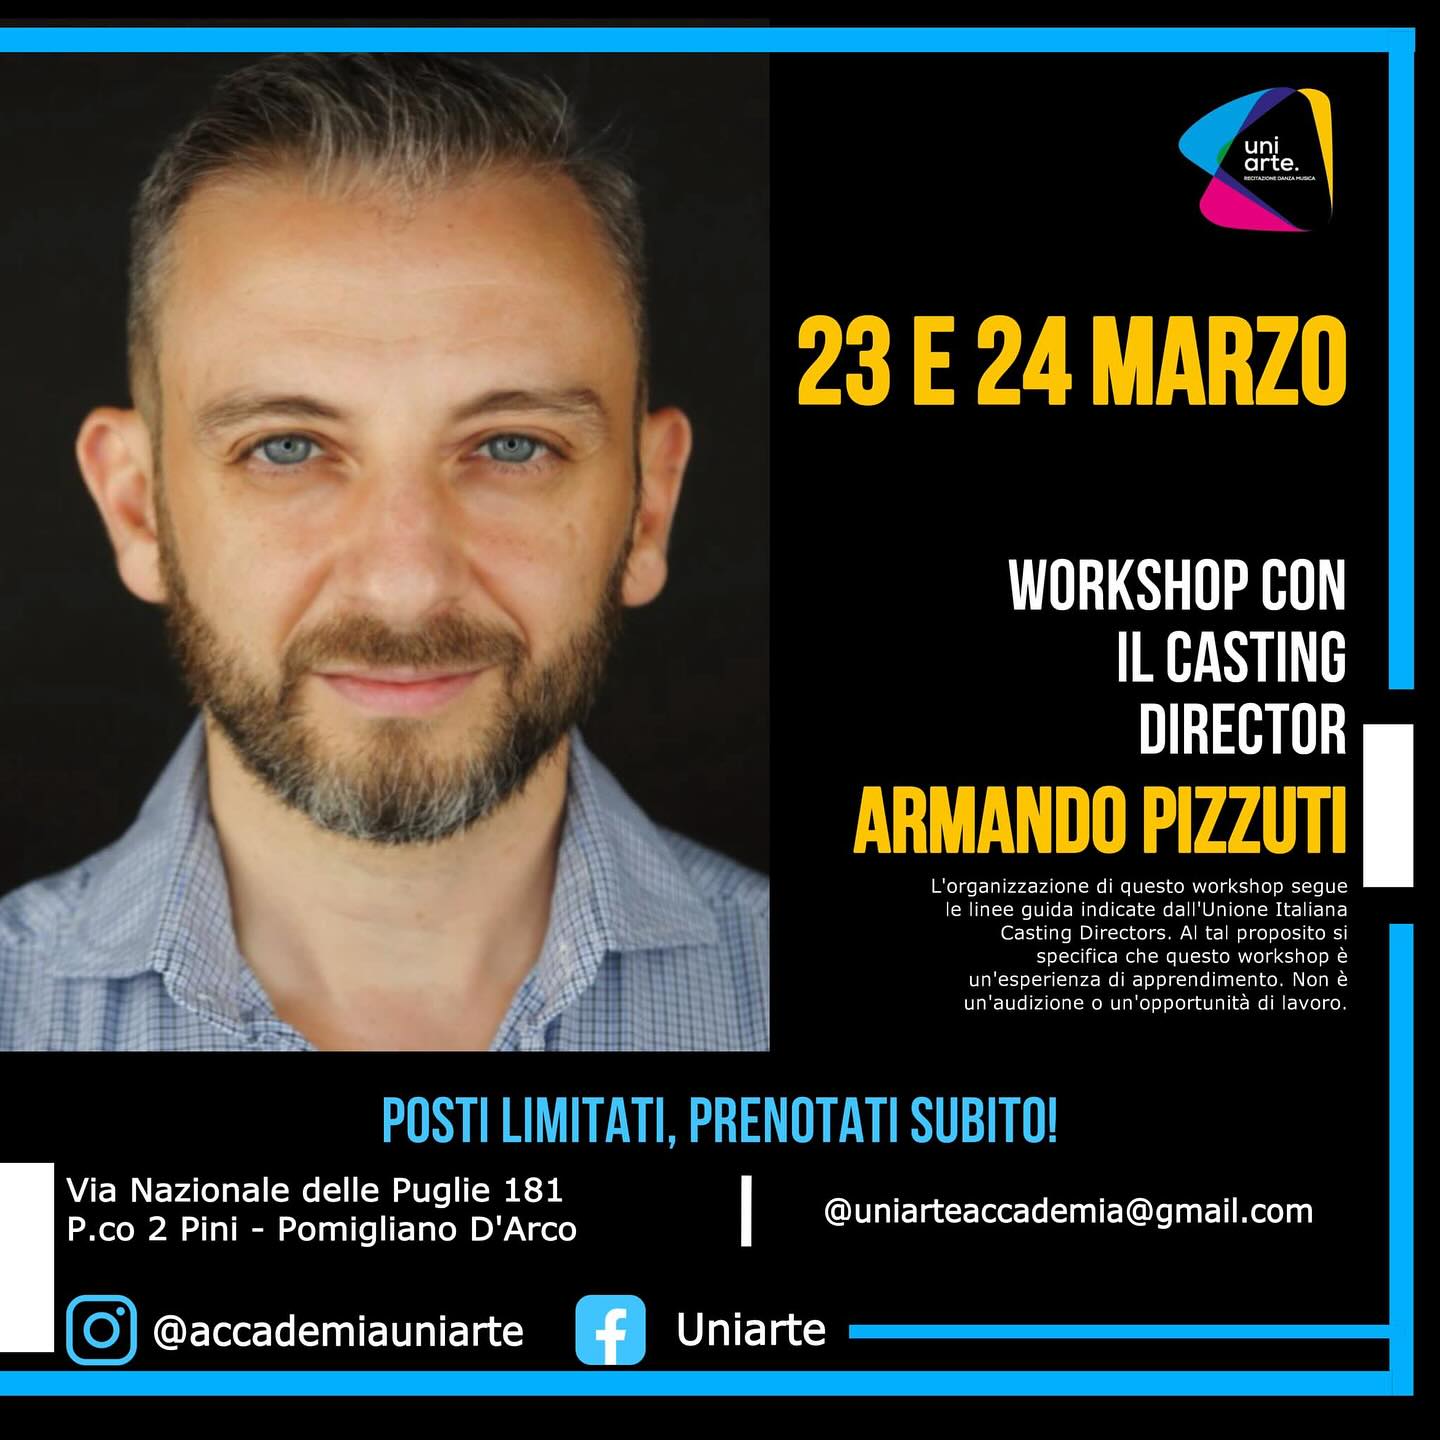 Workshop con il casting director Armando Pizzuti